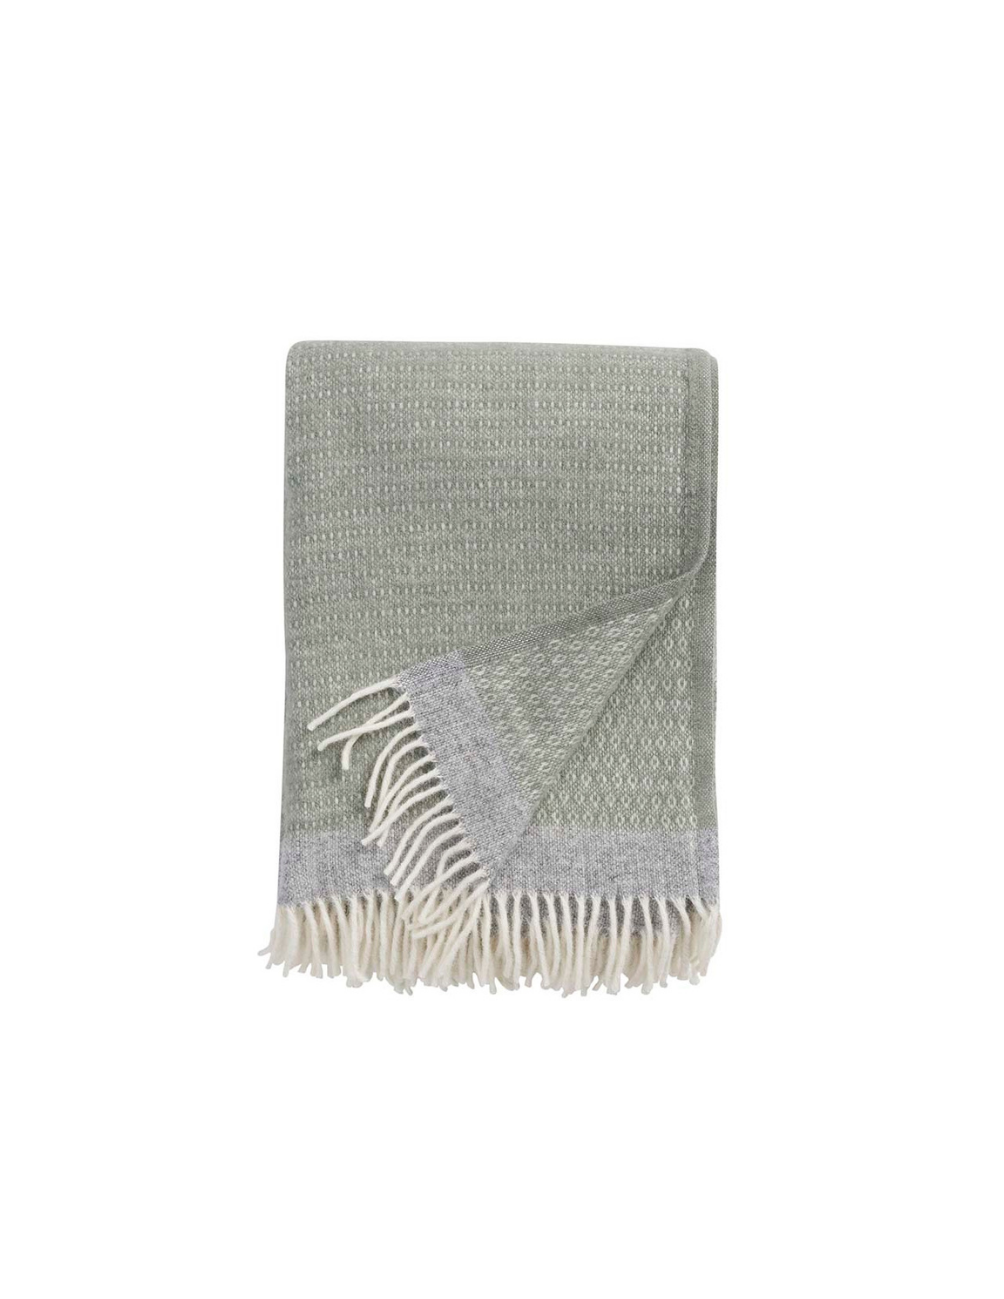 Harald Green/ Gray Wool Blanket